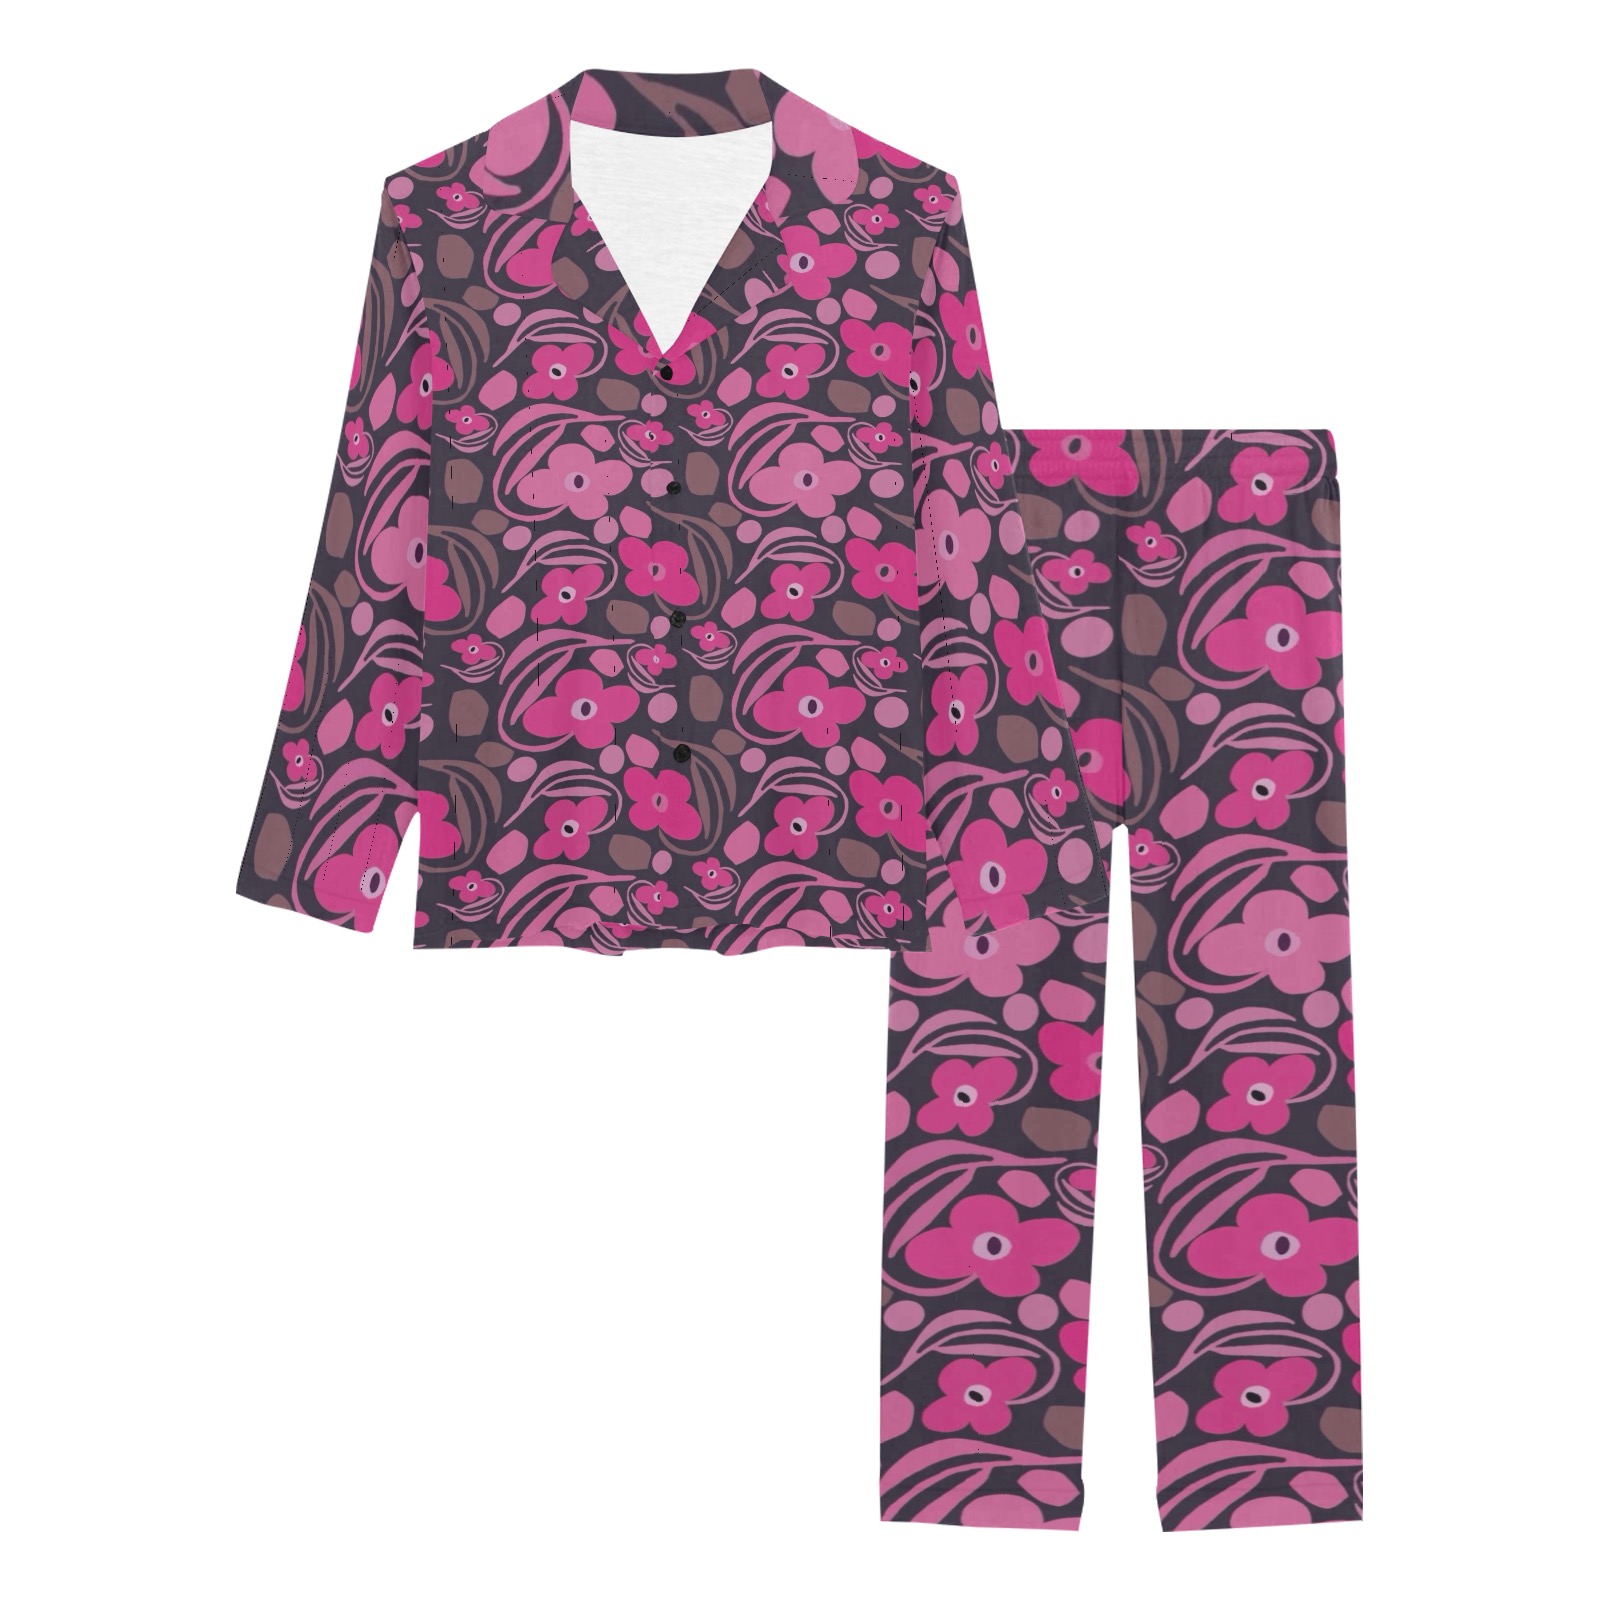 Retro pink floral Women's Long Pajama Set